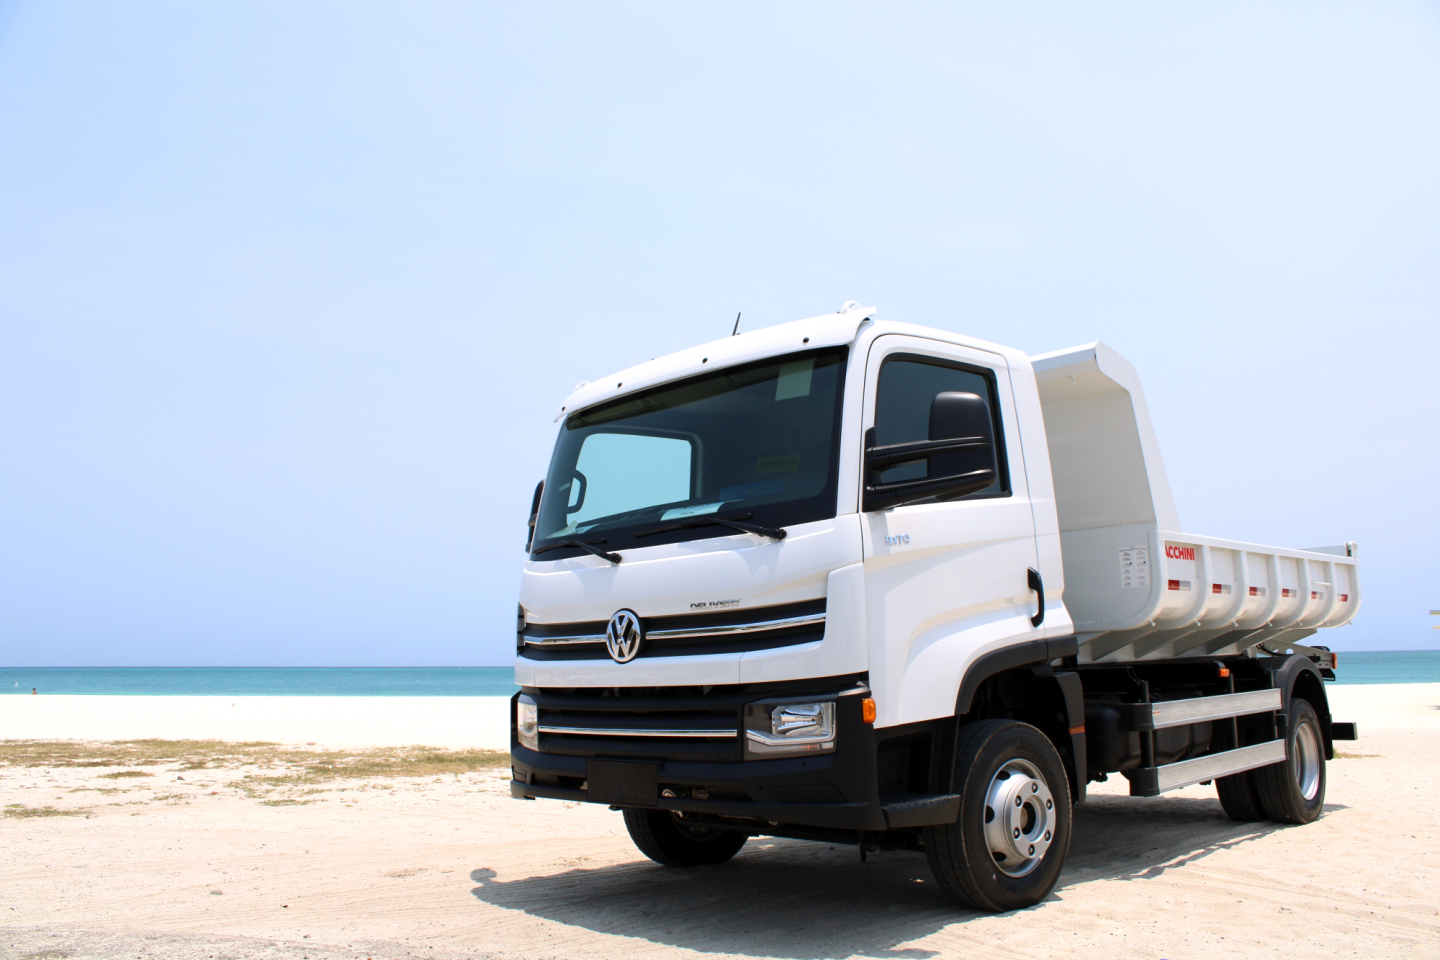 Volkswagen amplia destinos de exportação com lançamento do caminhão Delivery em Aruba